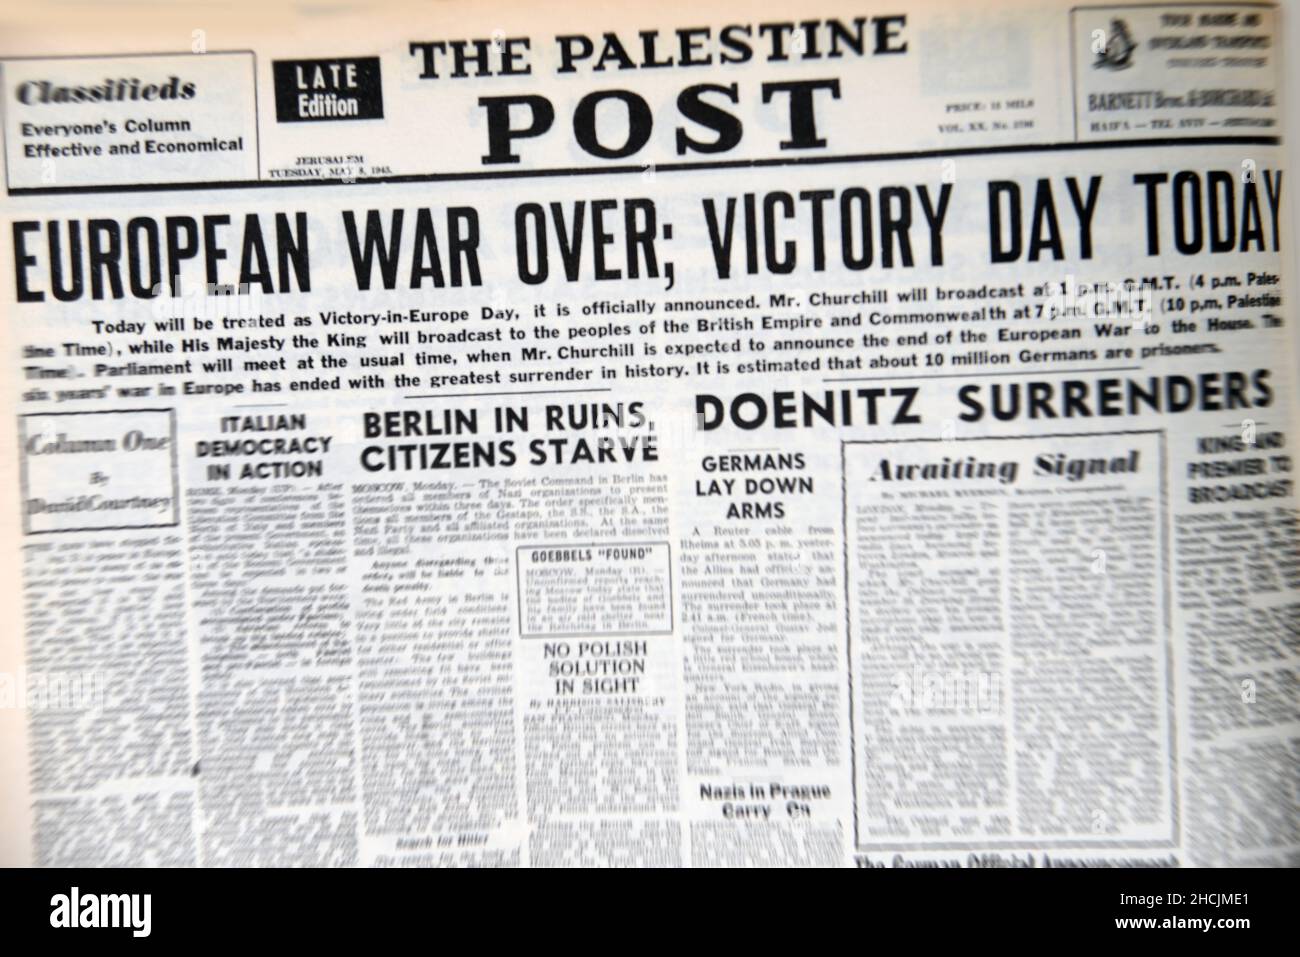 Schlagzeile der israelischen Zeitung mit einem historischen Ereignis - Sieg in Europa, 1945 Stockfoto